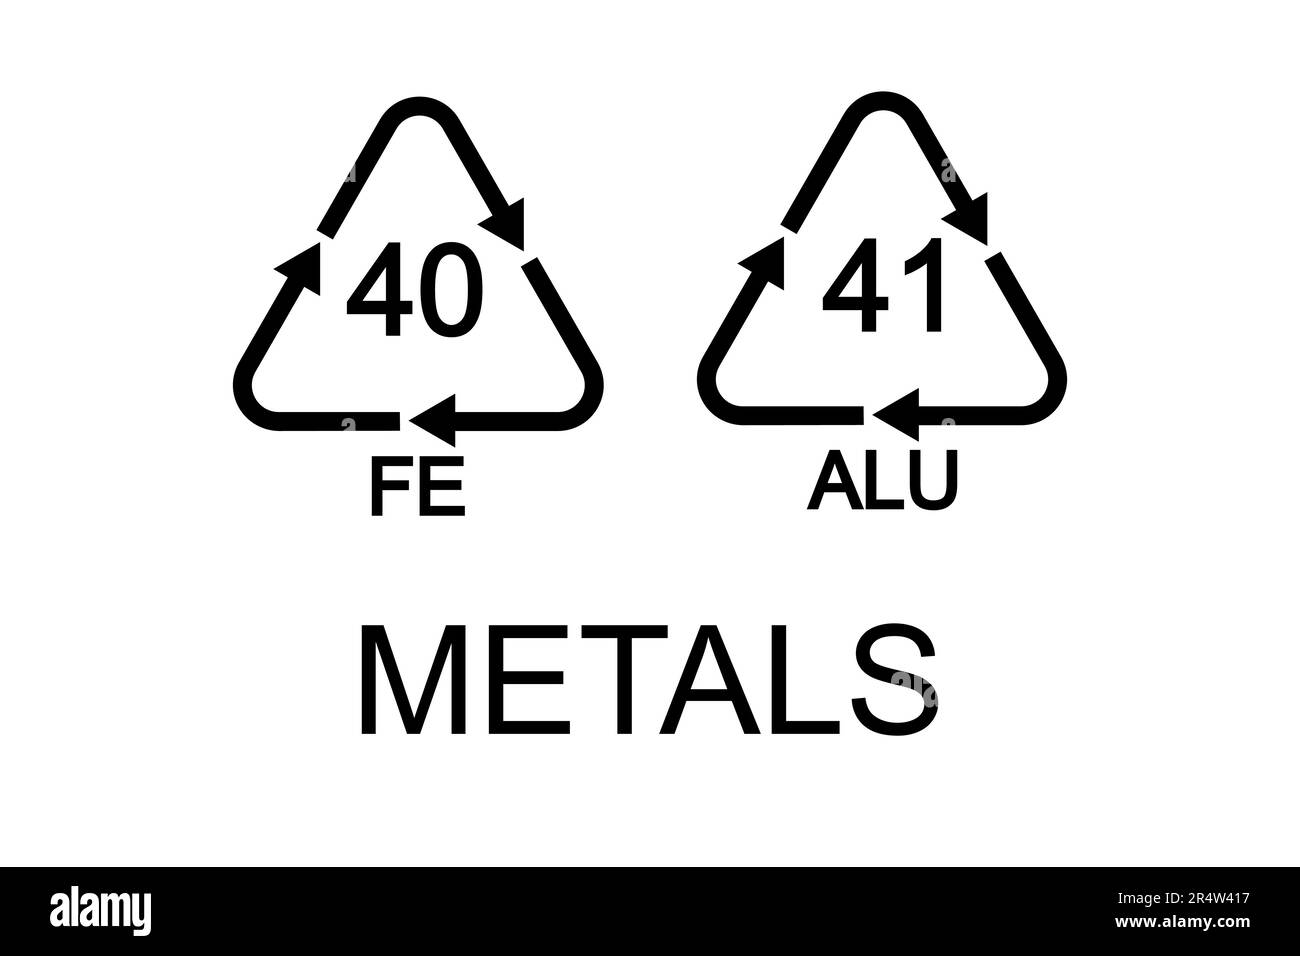 PANNEAUX de recyclage ALU 41 et FE 40 de formes triangulaires avec flèches. Icônes réutilisables en aluminium métallique isolées sur fond blanc. Environnement Illustration de Vecteur